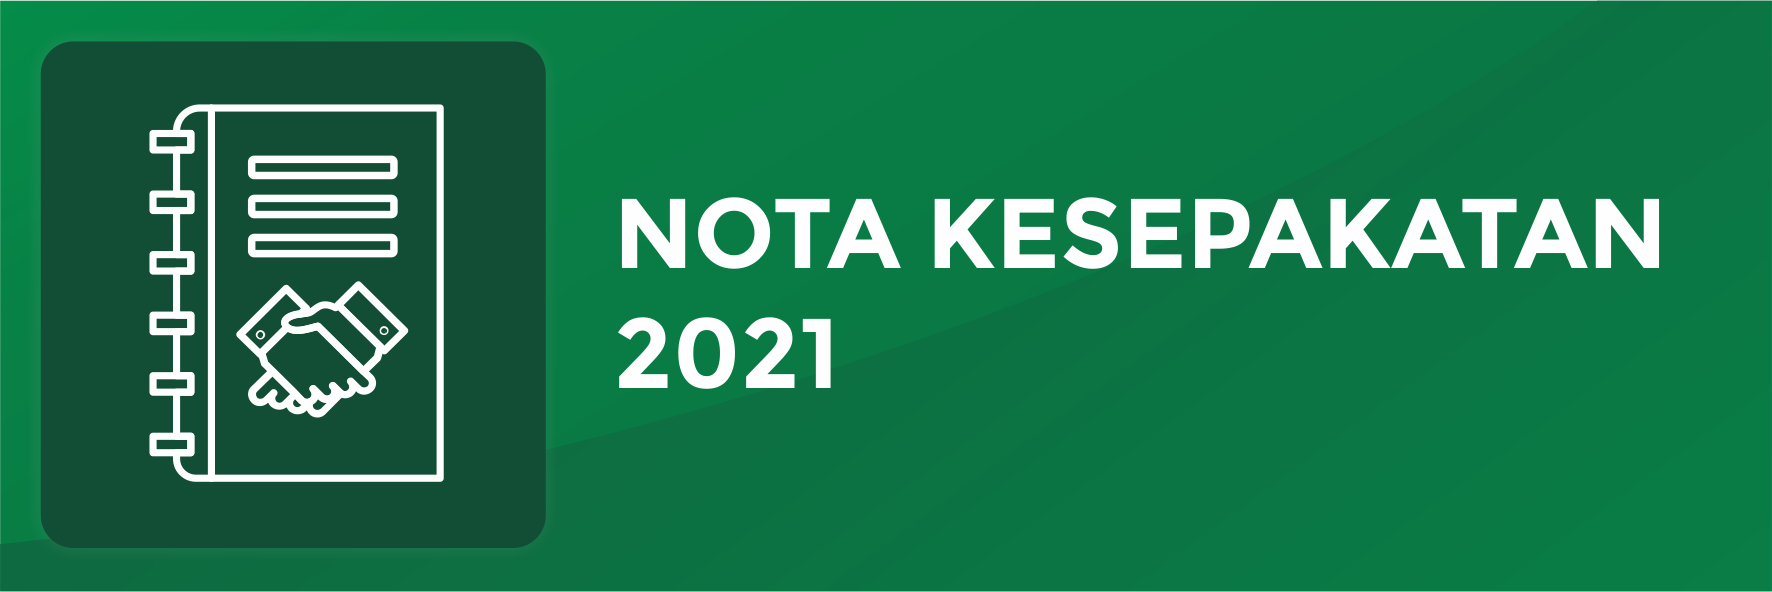 Nota Kesepakatan 2021